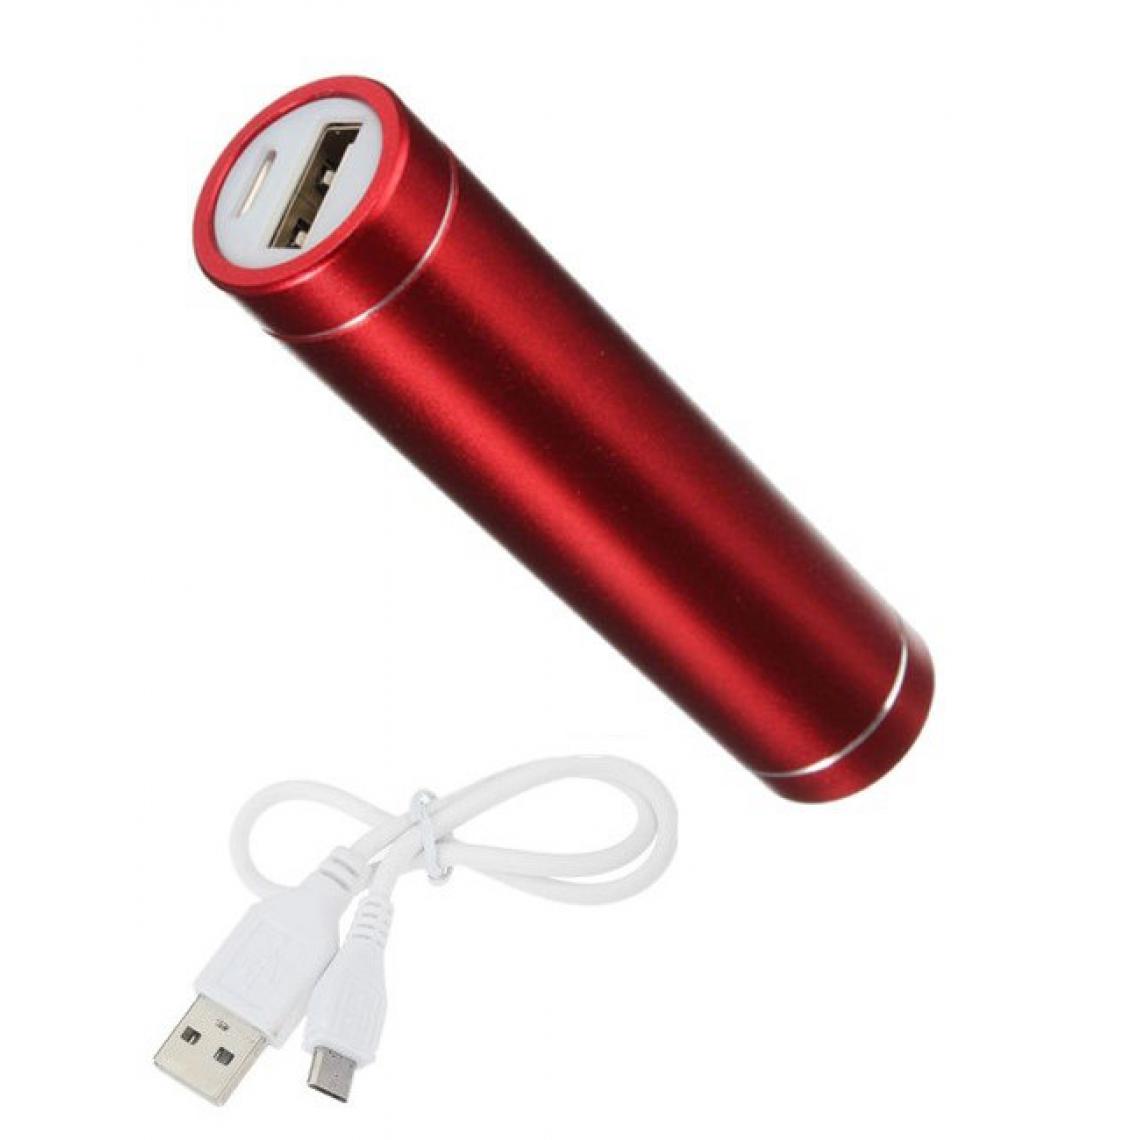 Shot - Batterie Chargeur Externe pour OPPO Reno Z Power Bank 2600mAh avec Cable USB/Mirco USB Secours Telephone (ROUGE) - Chargeur secteur téléphone